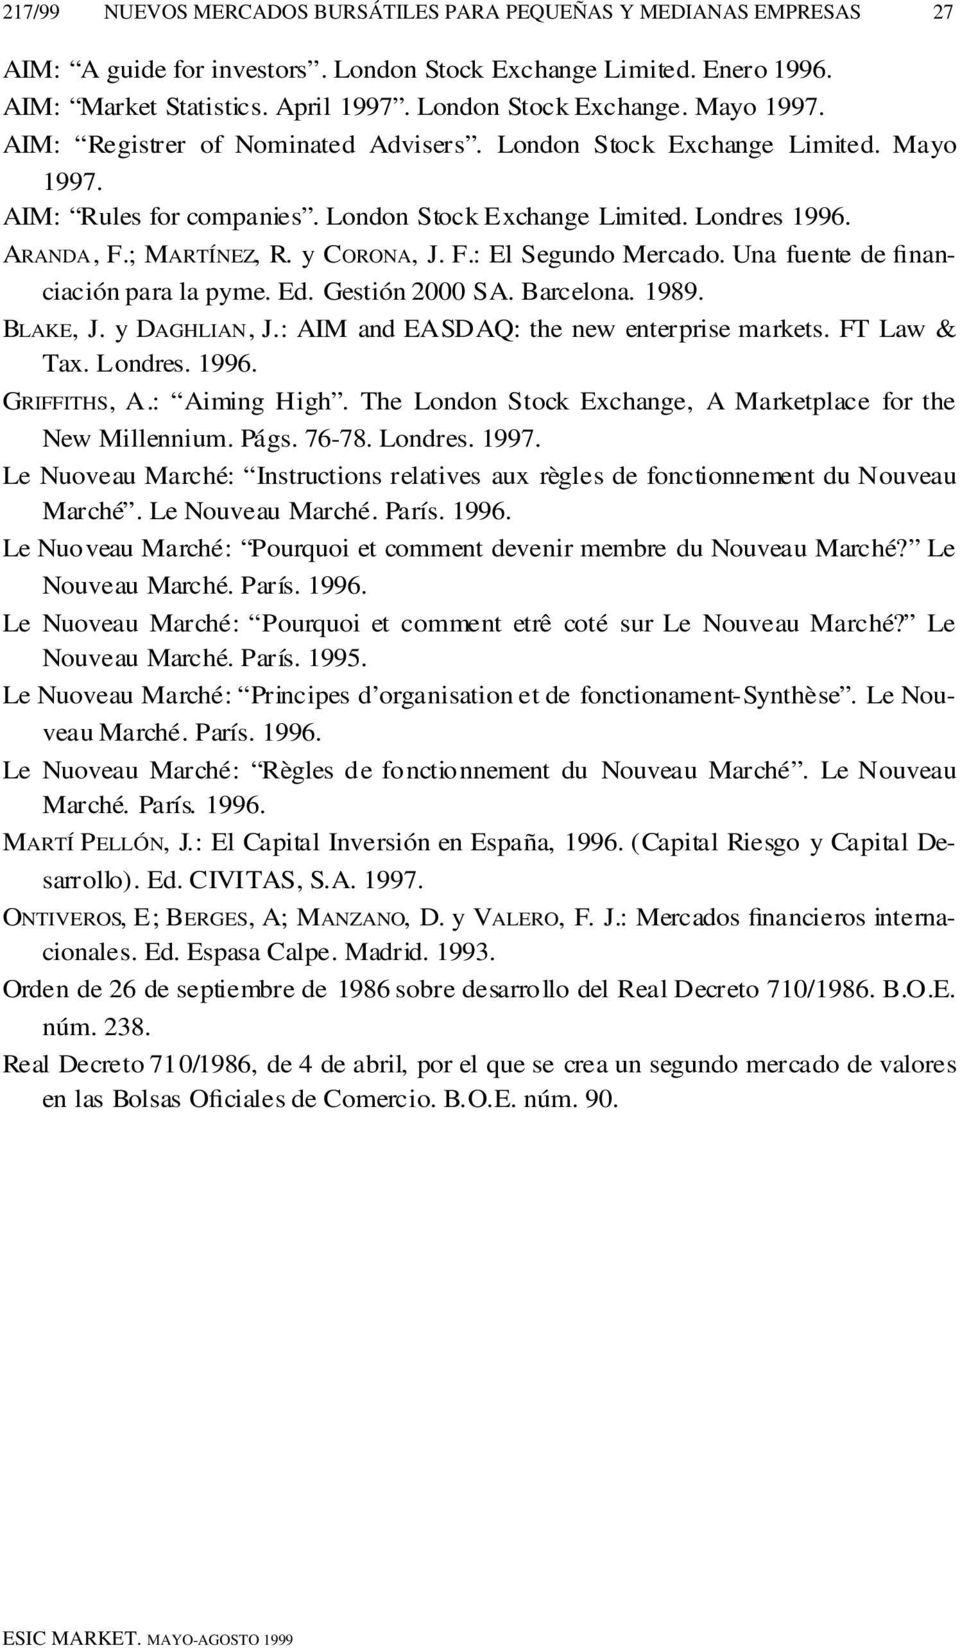 y CO R O N A, J. F.: El Segundo Mercado. Una fuente de fin a n- ciación para la pyme. Ed. Gestión 2000 SA. Barcelona. 1989. BL A K E, J. y DA G H L I A N, J.